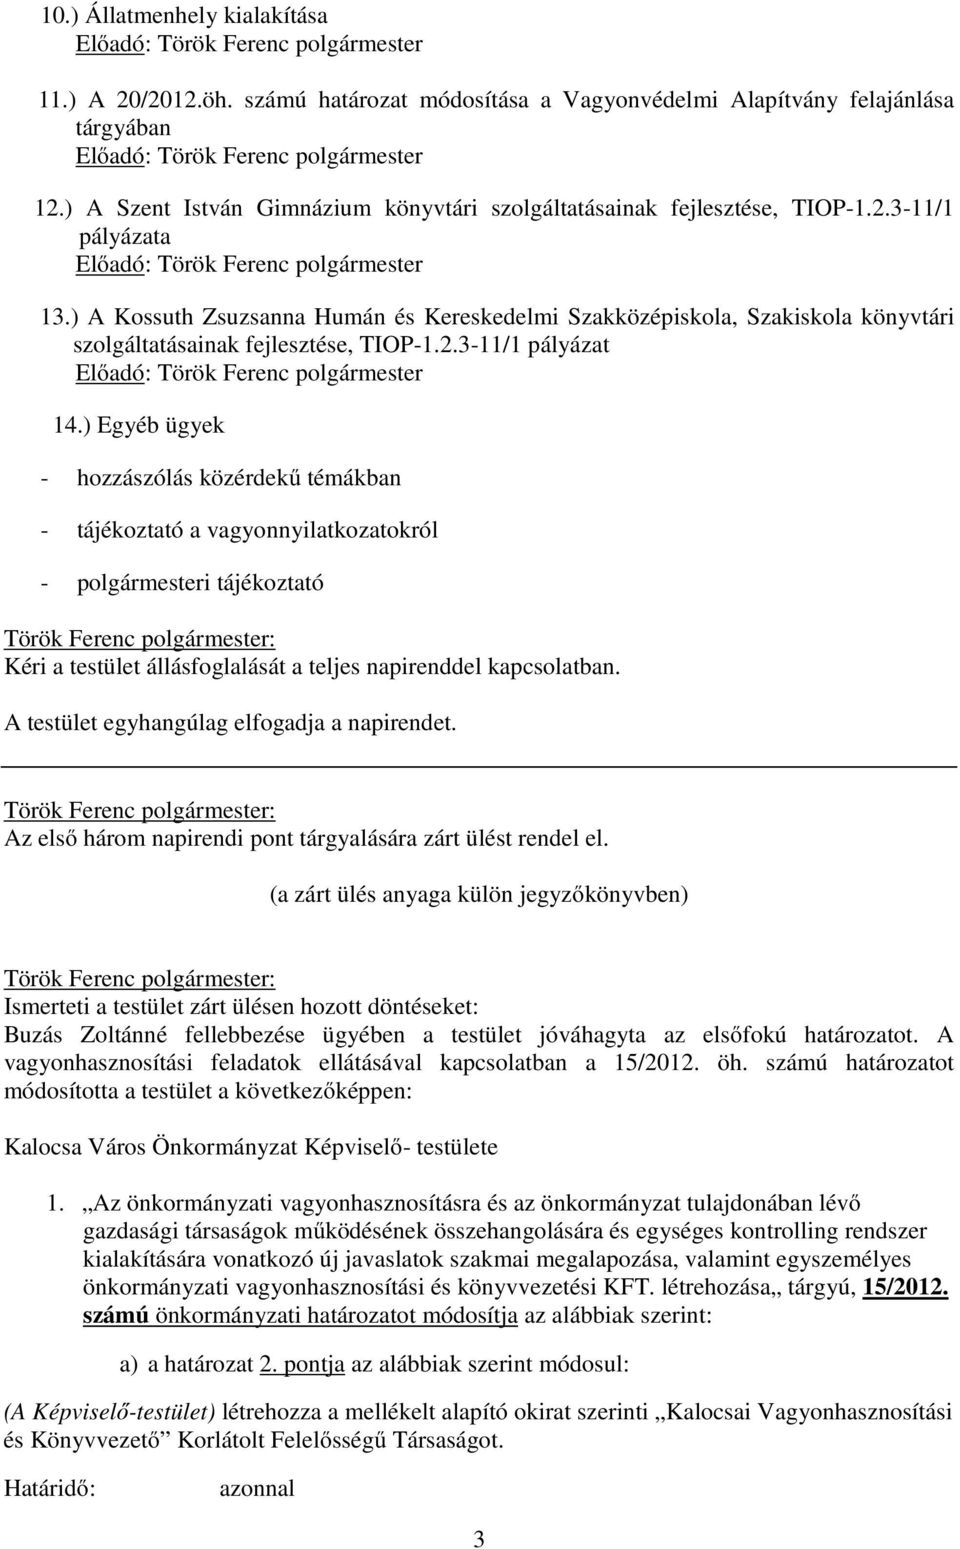 ) A Kossuth Zsuzsanna Humán és Kereskedelmi Szakközépiskola, Szakiskola könyvtári szolgáltatásainak fejlesztése, TIOP-1.2.3-11/1 pályázat Előadó: Török Ferenc polgármester 14.